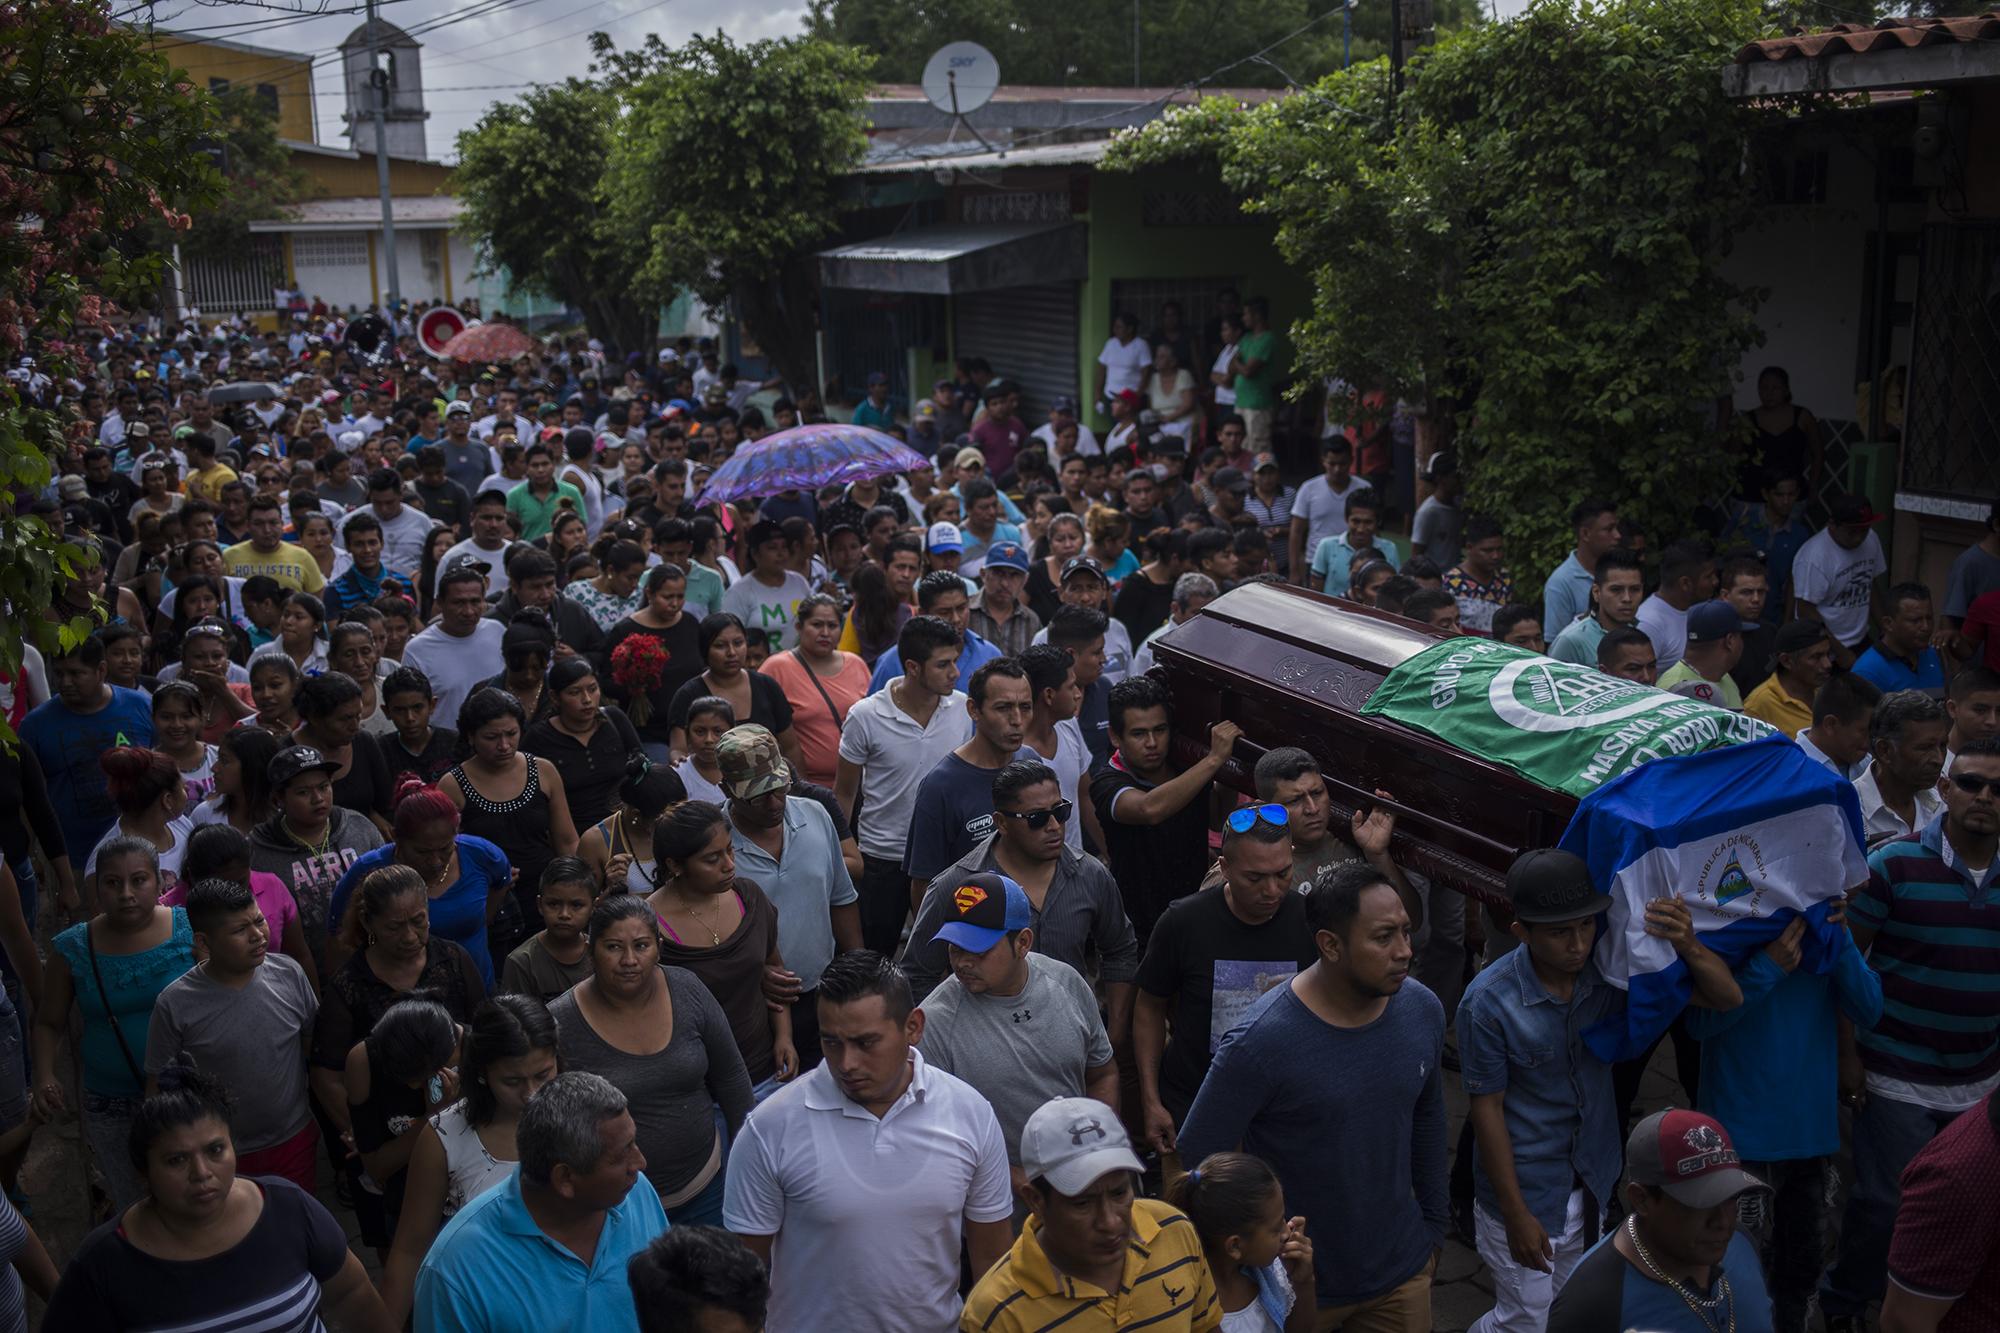 En el barrio Monimbó, los habitantes enterraron a Jason Putoy, asesinado el domingo 3 de junio, mientras custodiaba una barricada en la calle de la Cruz Roja. Putoy era habitante de Monimbó, la cuna de la revolución sandinista, donde hoy se rebelan contra Daniel Ortega, el líder al que defendieron en 1979.